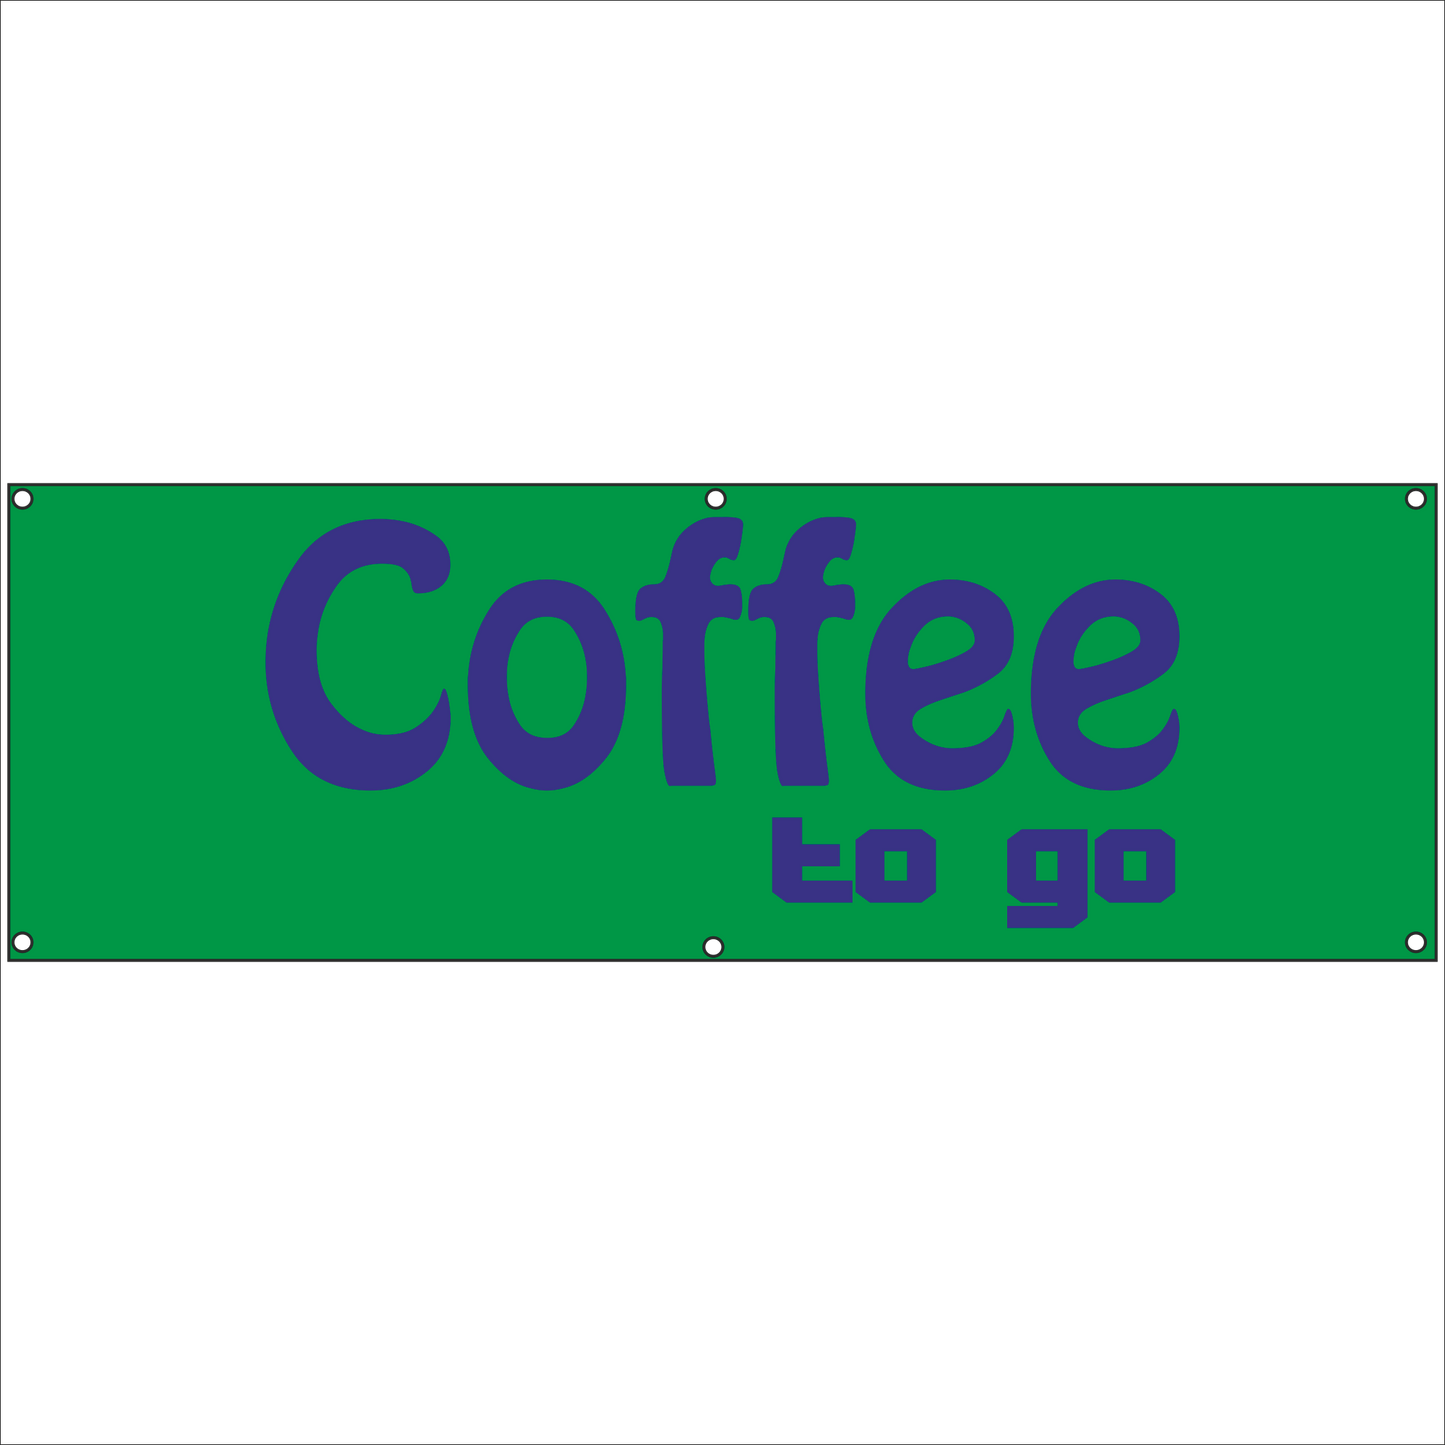 Werbeplane - Gerüstplane - p048 - Coffee to go - NEU - Plane für Baustelle- Garten- Zaun oder Veranstaltung